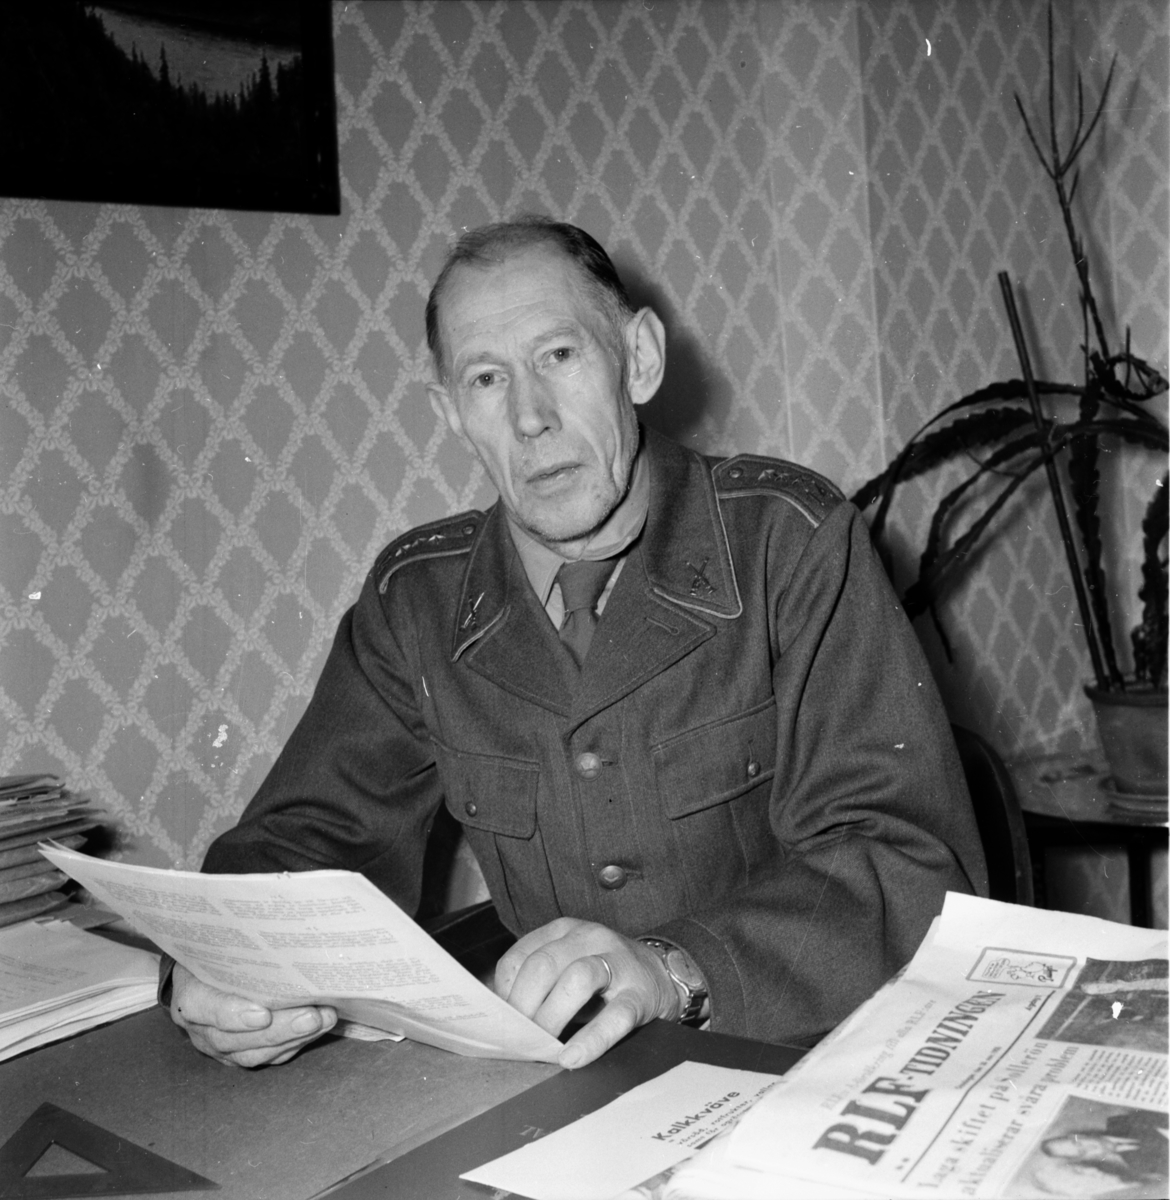 Kapten R. Edling
Landafors 1955